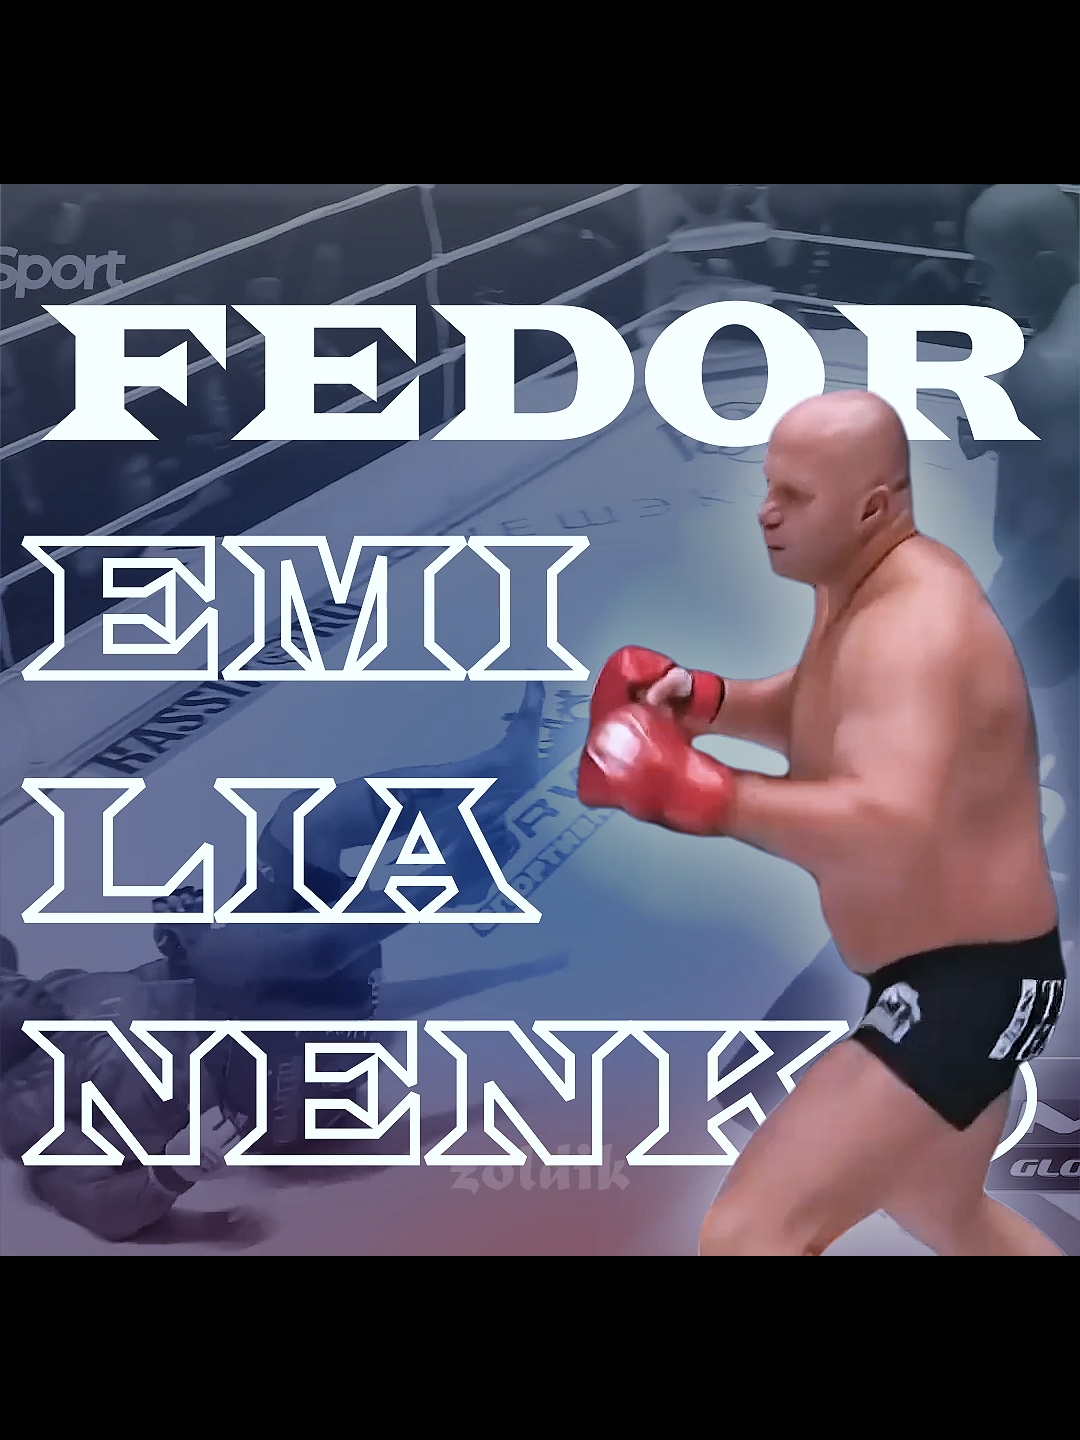 The Russian Beast🇷🇺 #fyp #fypシ #viral #edit #mma #mmaedit #fighter #fedor #emelianenko #fedoremelianenko #UFC #bellator #combat #goat #russia #miketyson #gsp